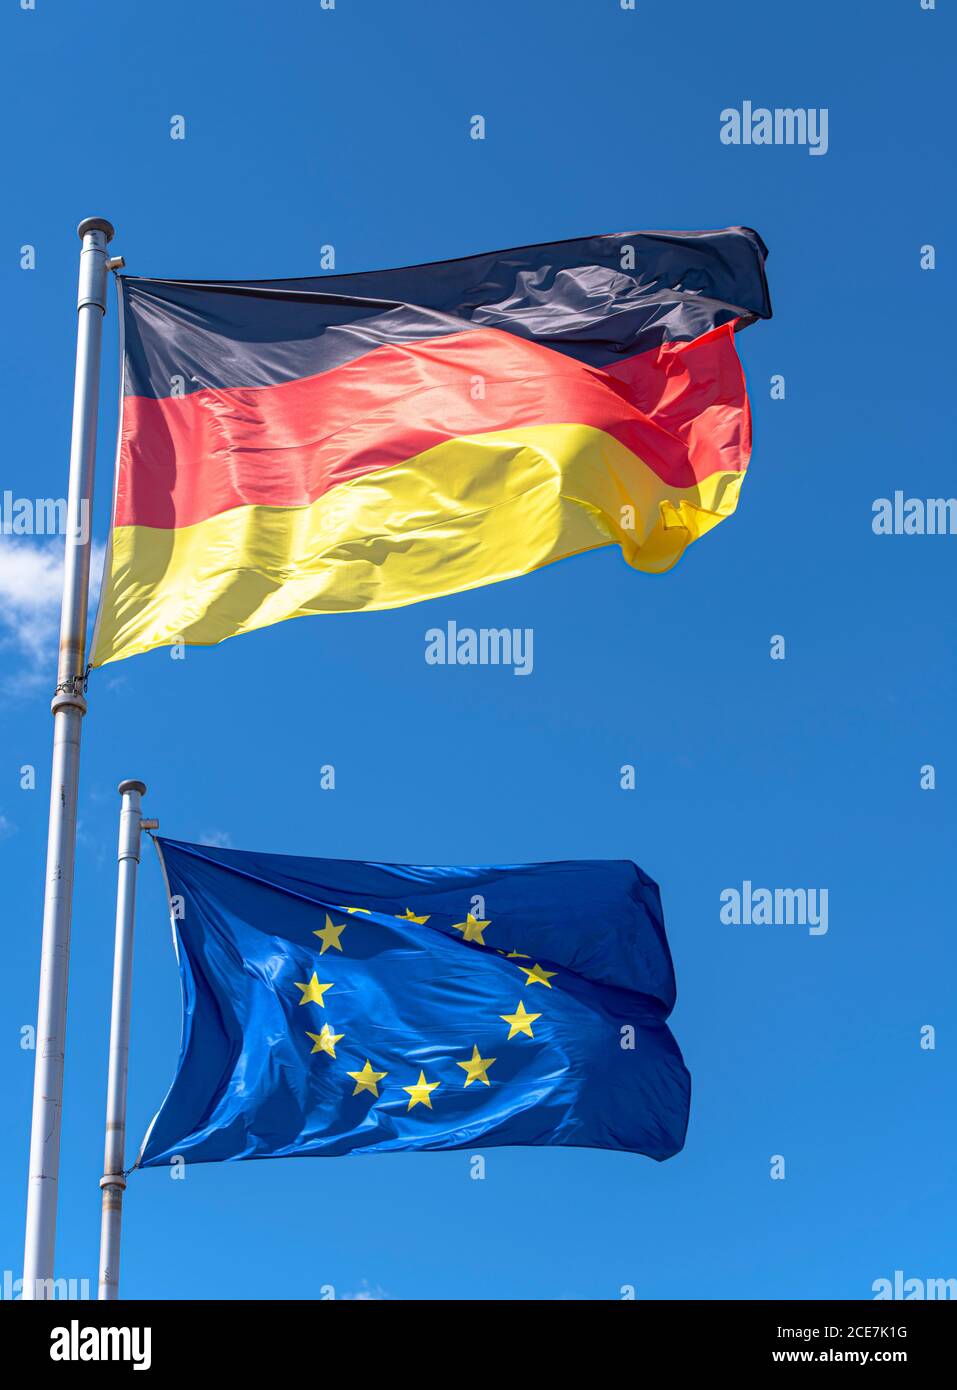 L'Allemagne et l'Union européenne se flag contre le ciel bleu à Berlin Banque D'Images